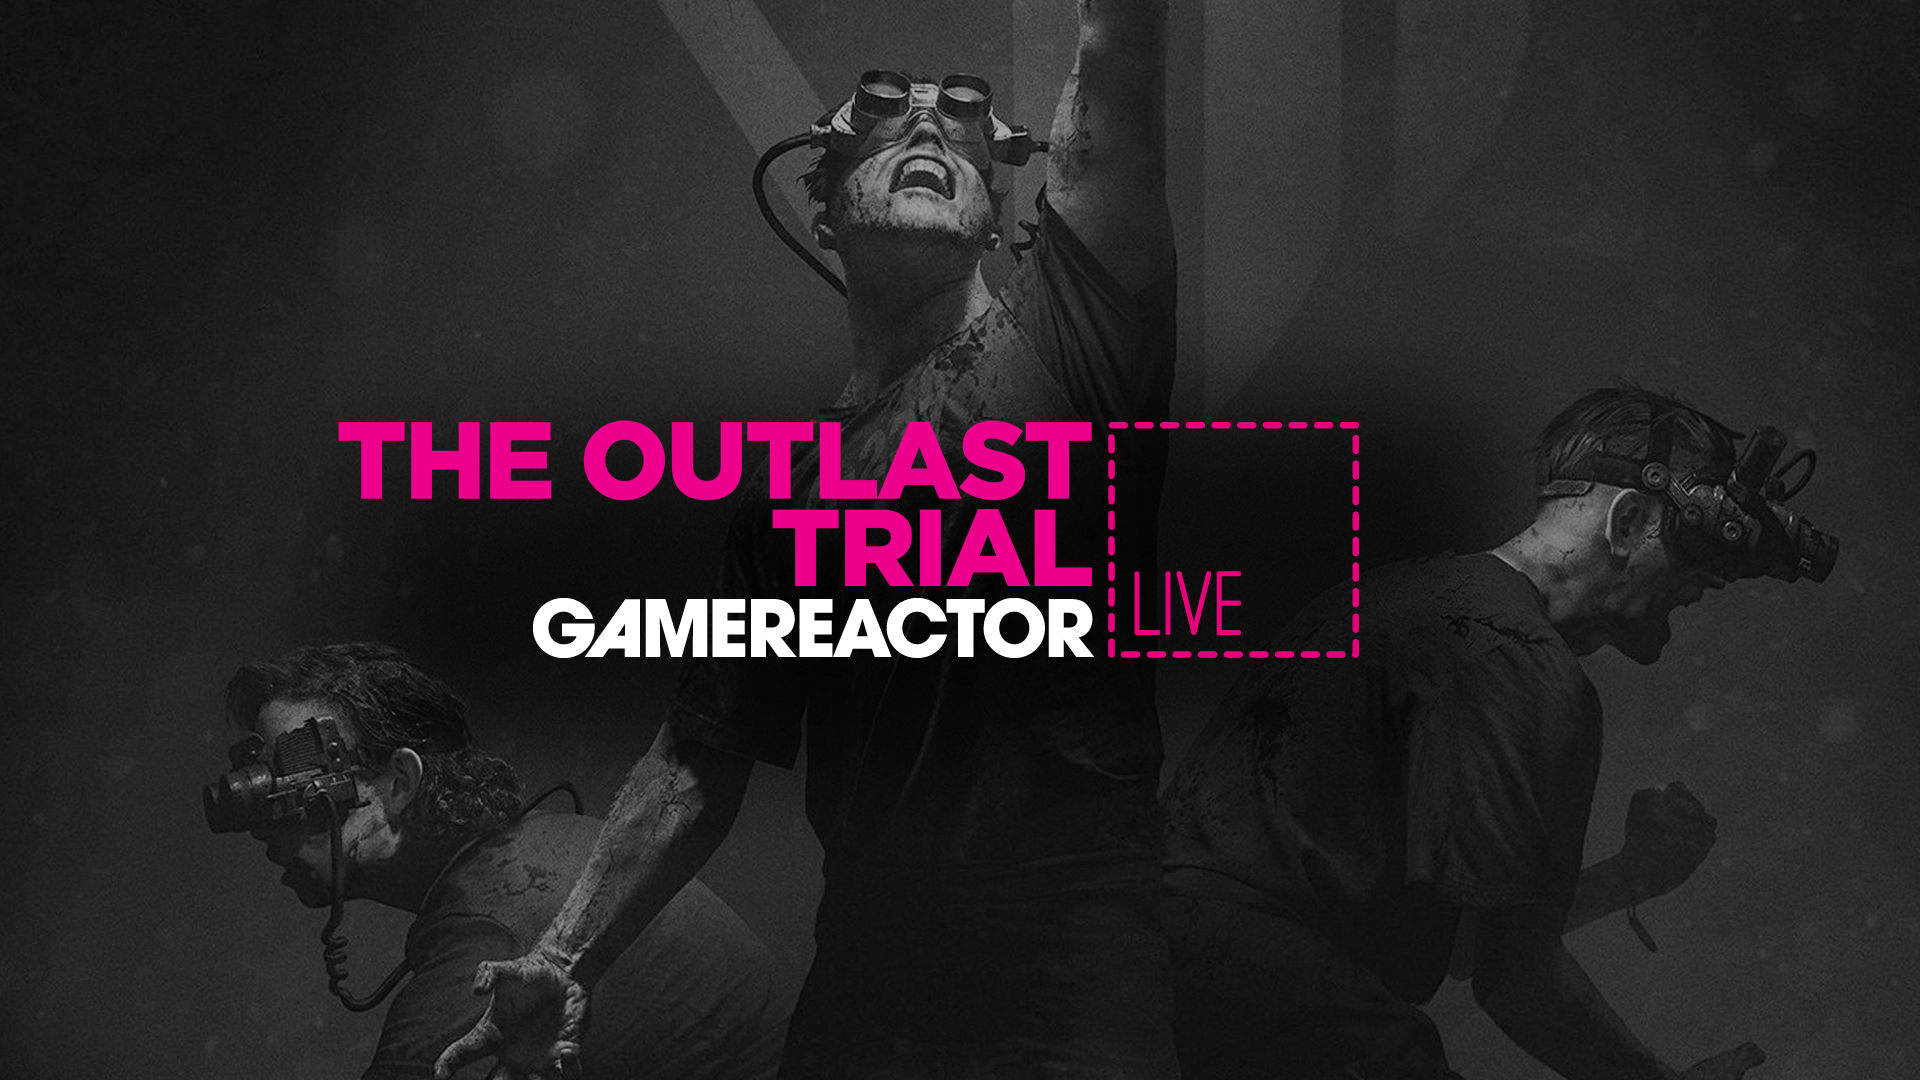 The Outlast Trials tem novo trailer e data de lançamento